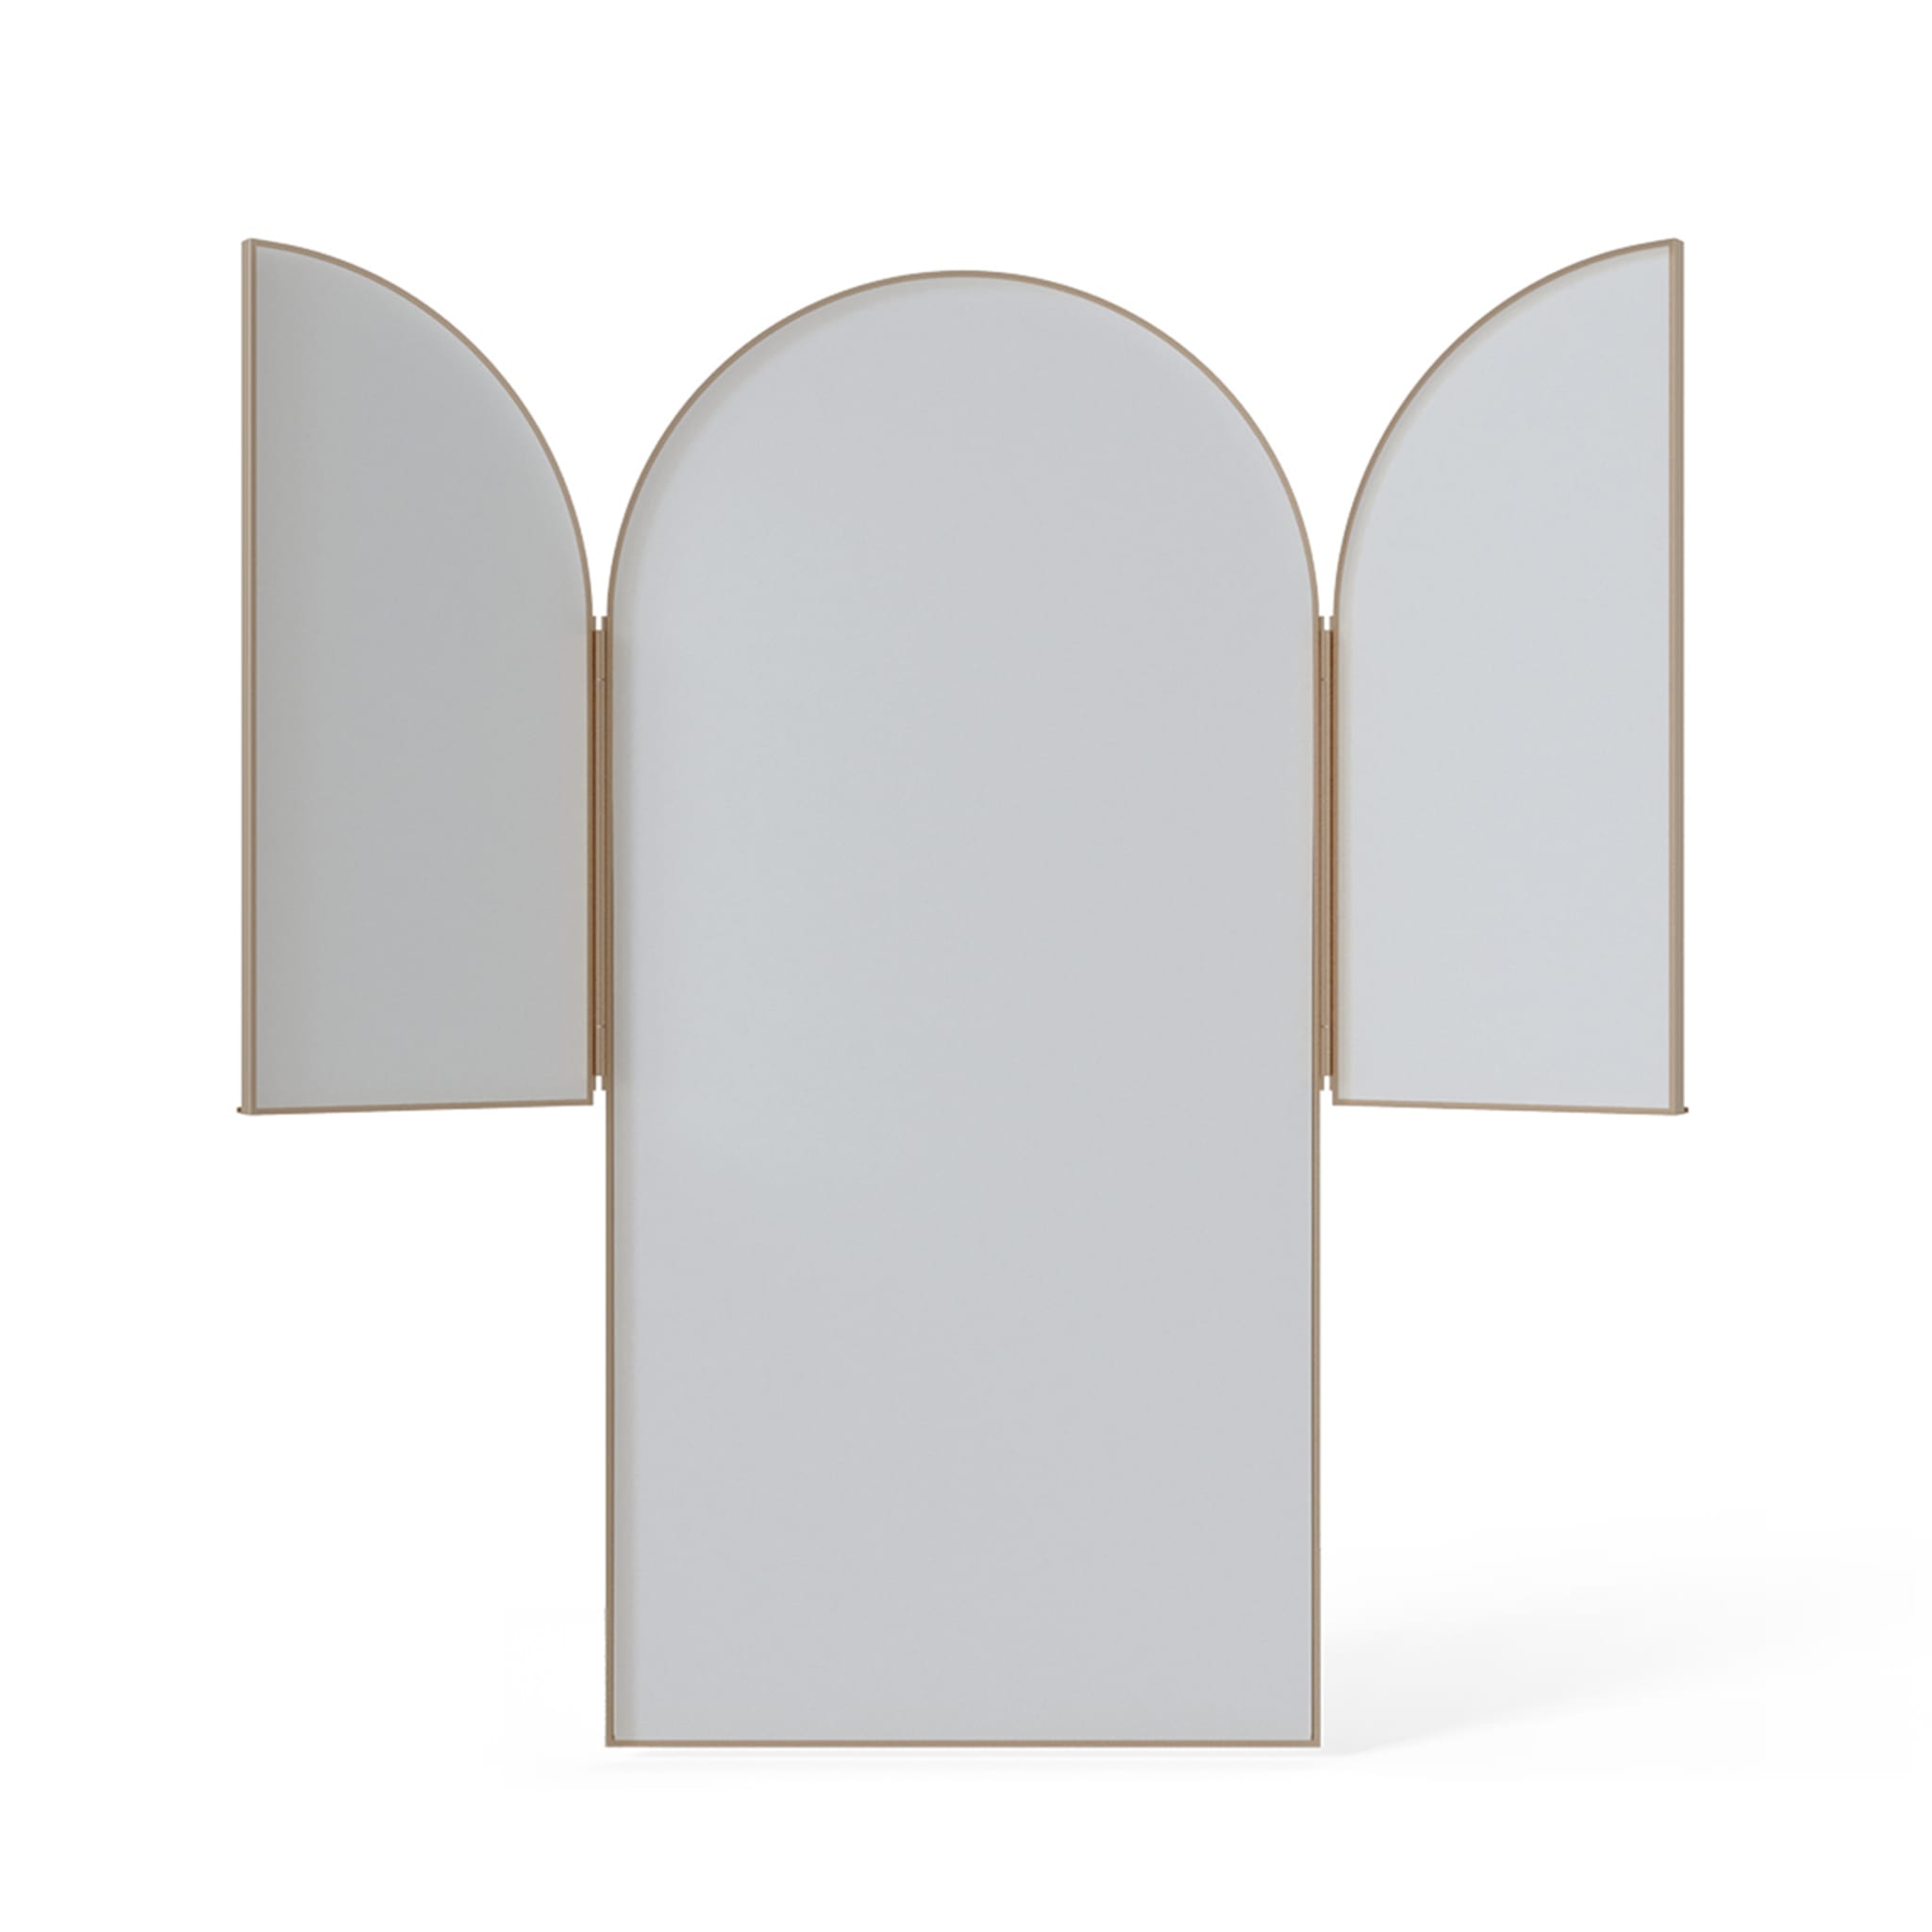 Zen White Triptych Mirror - Alternative view 1